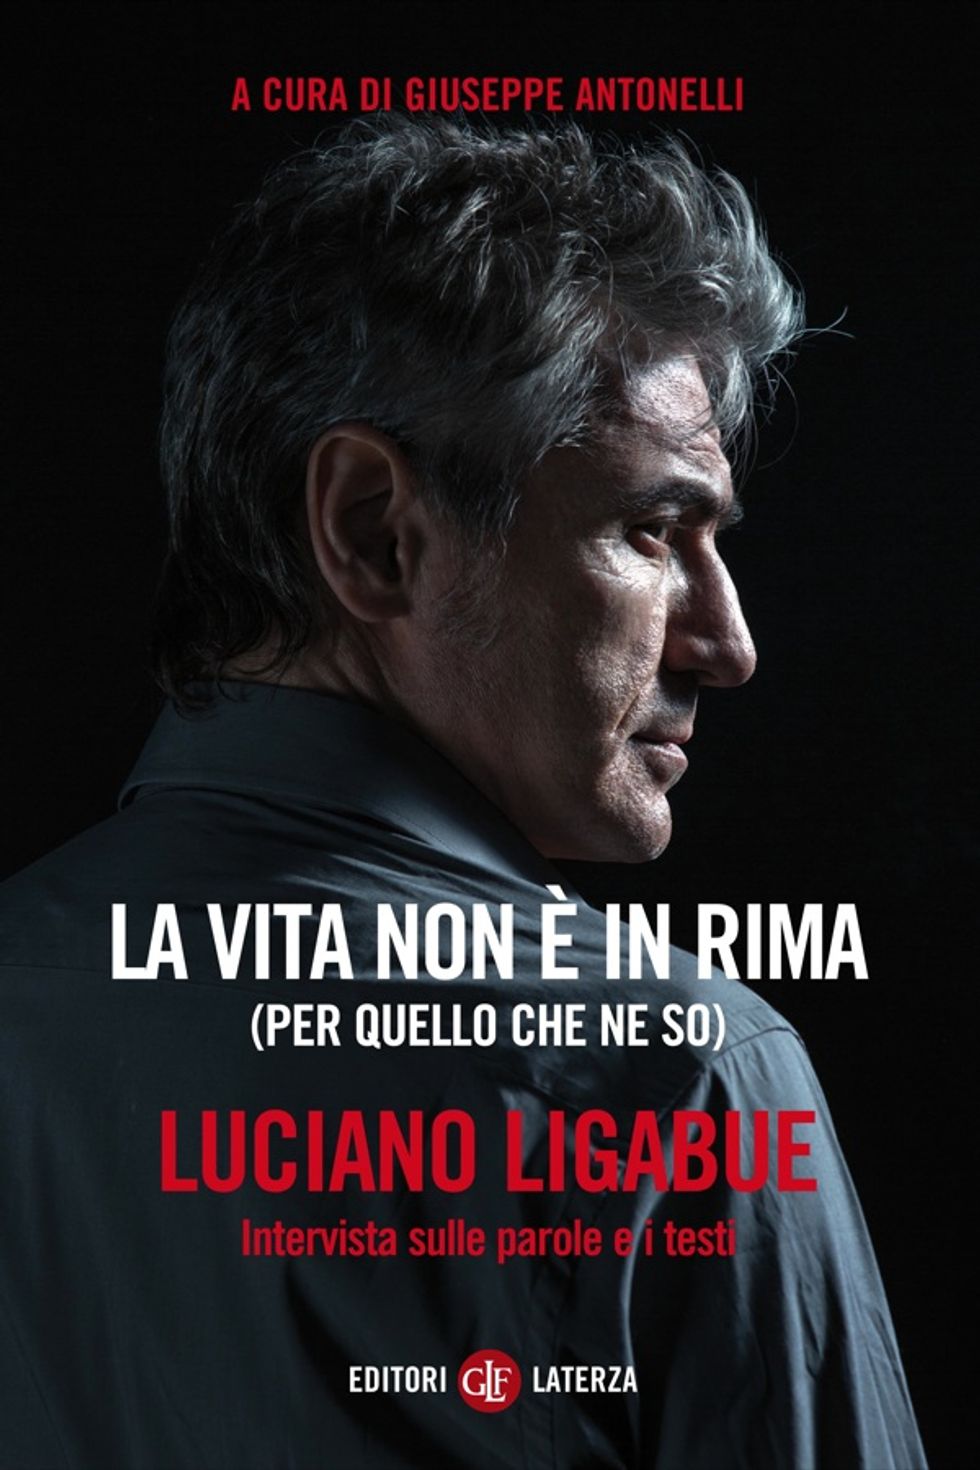 Luciano Ligabue: «La vita non è in rima. E io vi spiego perché»